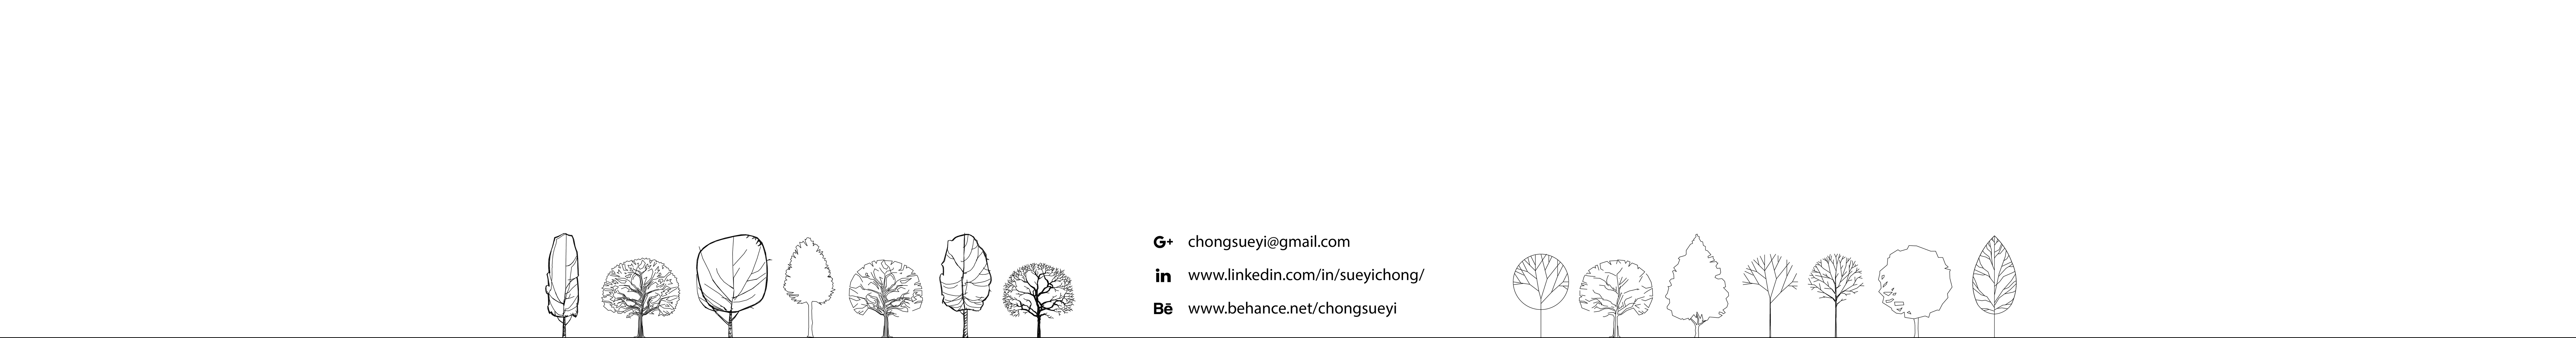 Banner profilu uživatele Sueyi Chong